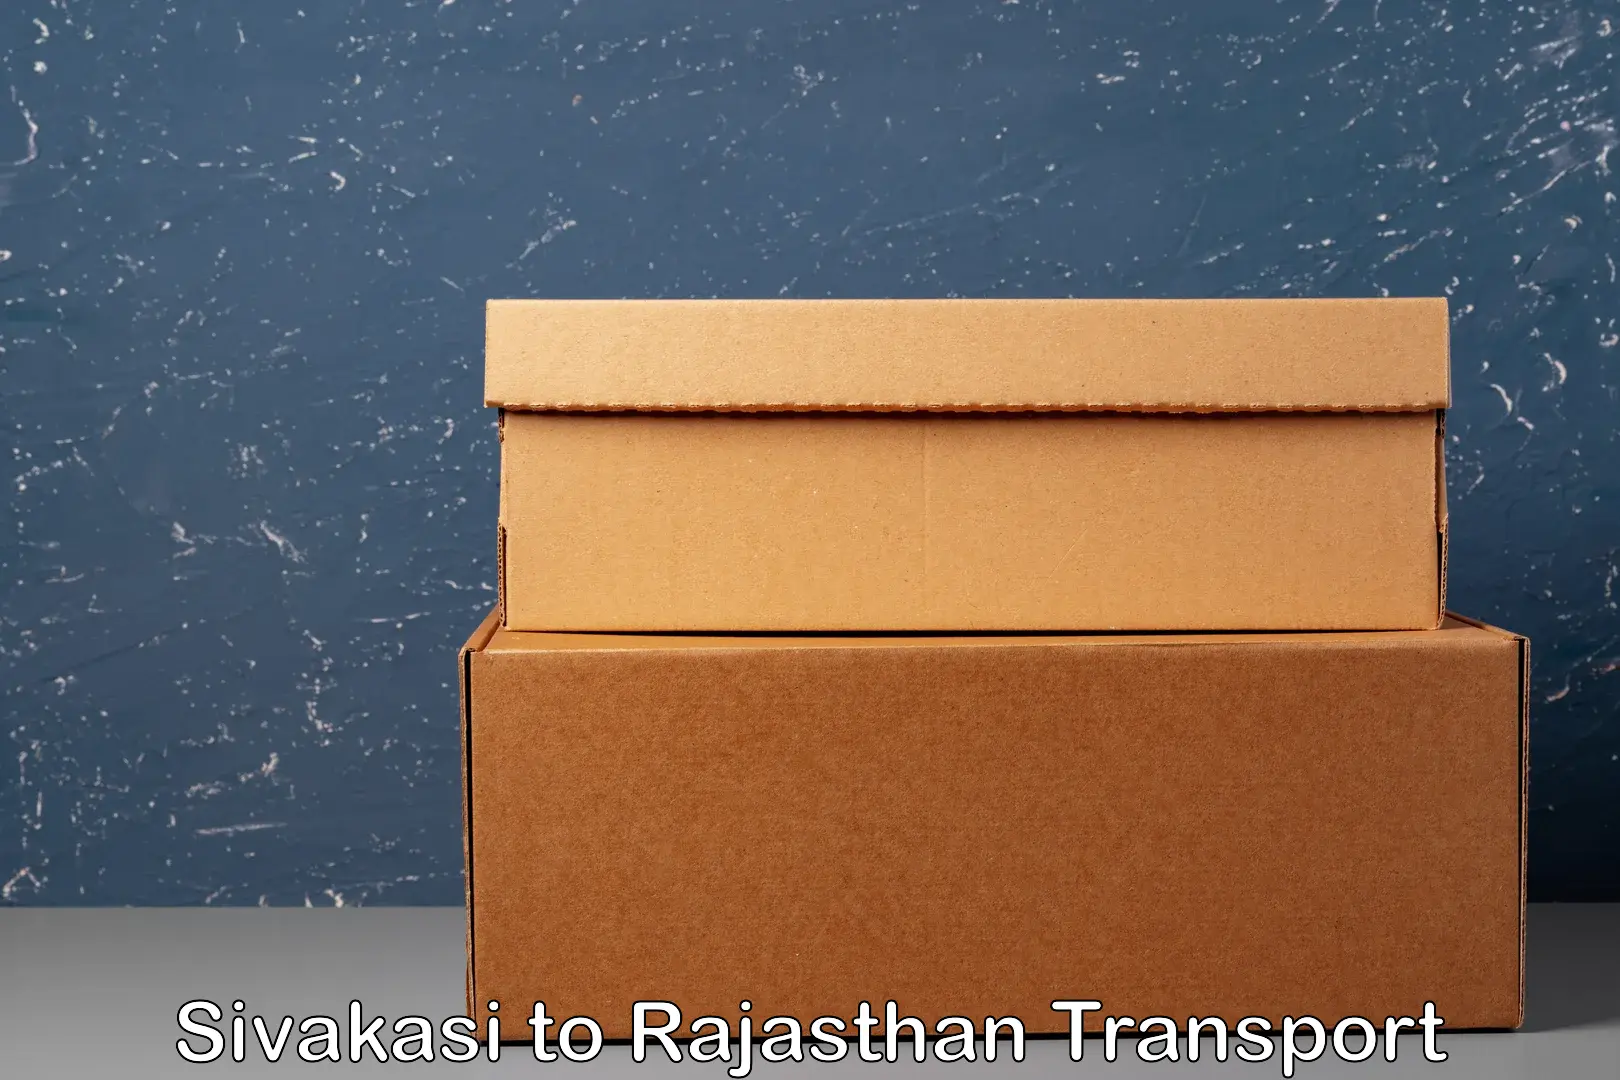 Door to door transport services in Sivakasi to Rajasthan